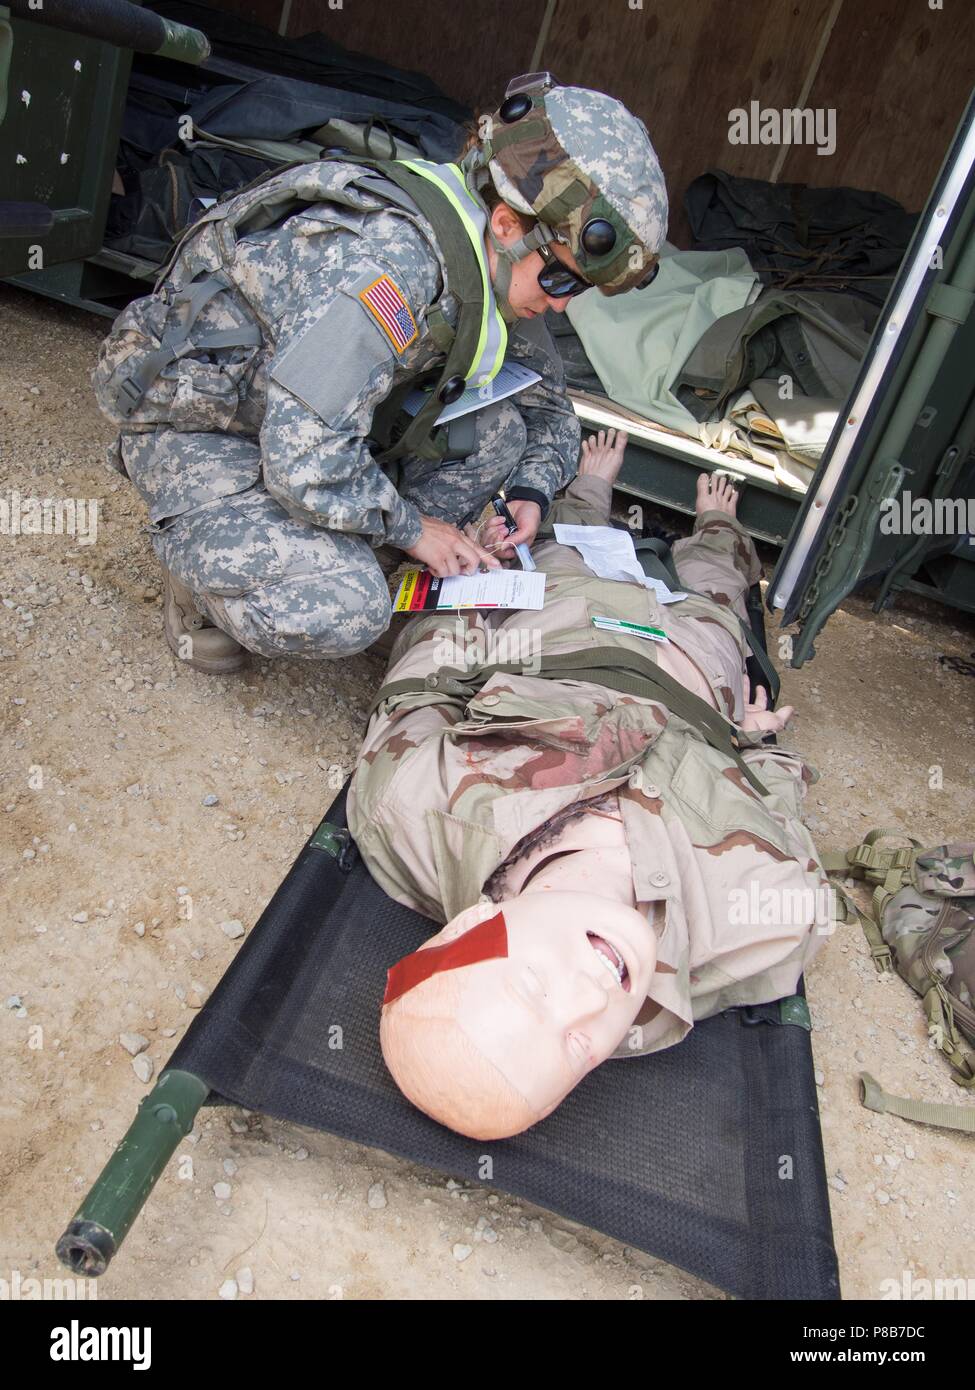 Des soldats de la réserve de l'armée américaine avec 865th Combat Support Hospital, basé à Utica, New York) effectuer les évaluations des patients dans le cadre d'un grand nombre de blessés au cours de l'exercice infirmier régional CSTX 86-18-04, à base d'entraînement tactique sur la justice Fort McCoy, Wisc. 23 juin 2018, 23 juin 2018. CSTX 86-18-04 est un exercice d'entraînement de soutien au combat qui assure l'America's Army les unités de réserve et les soldats sont formés et prêts à se déployer à court préavis et apporter capable, aptes au combat, et la puissance de feu meurtrière à l'appui de l'armée et nos partenaires n'importe où dans le monde. Réserve de l'Armée américaine par le Sergent photo Eric W. Jones. Banque D'Images